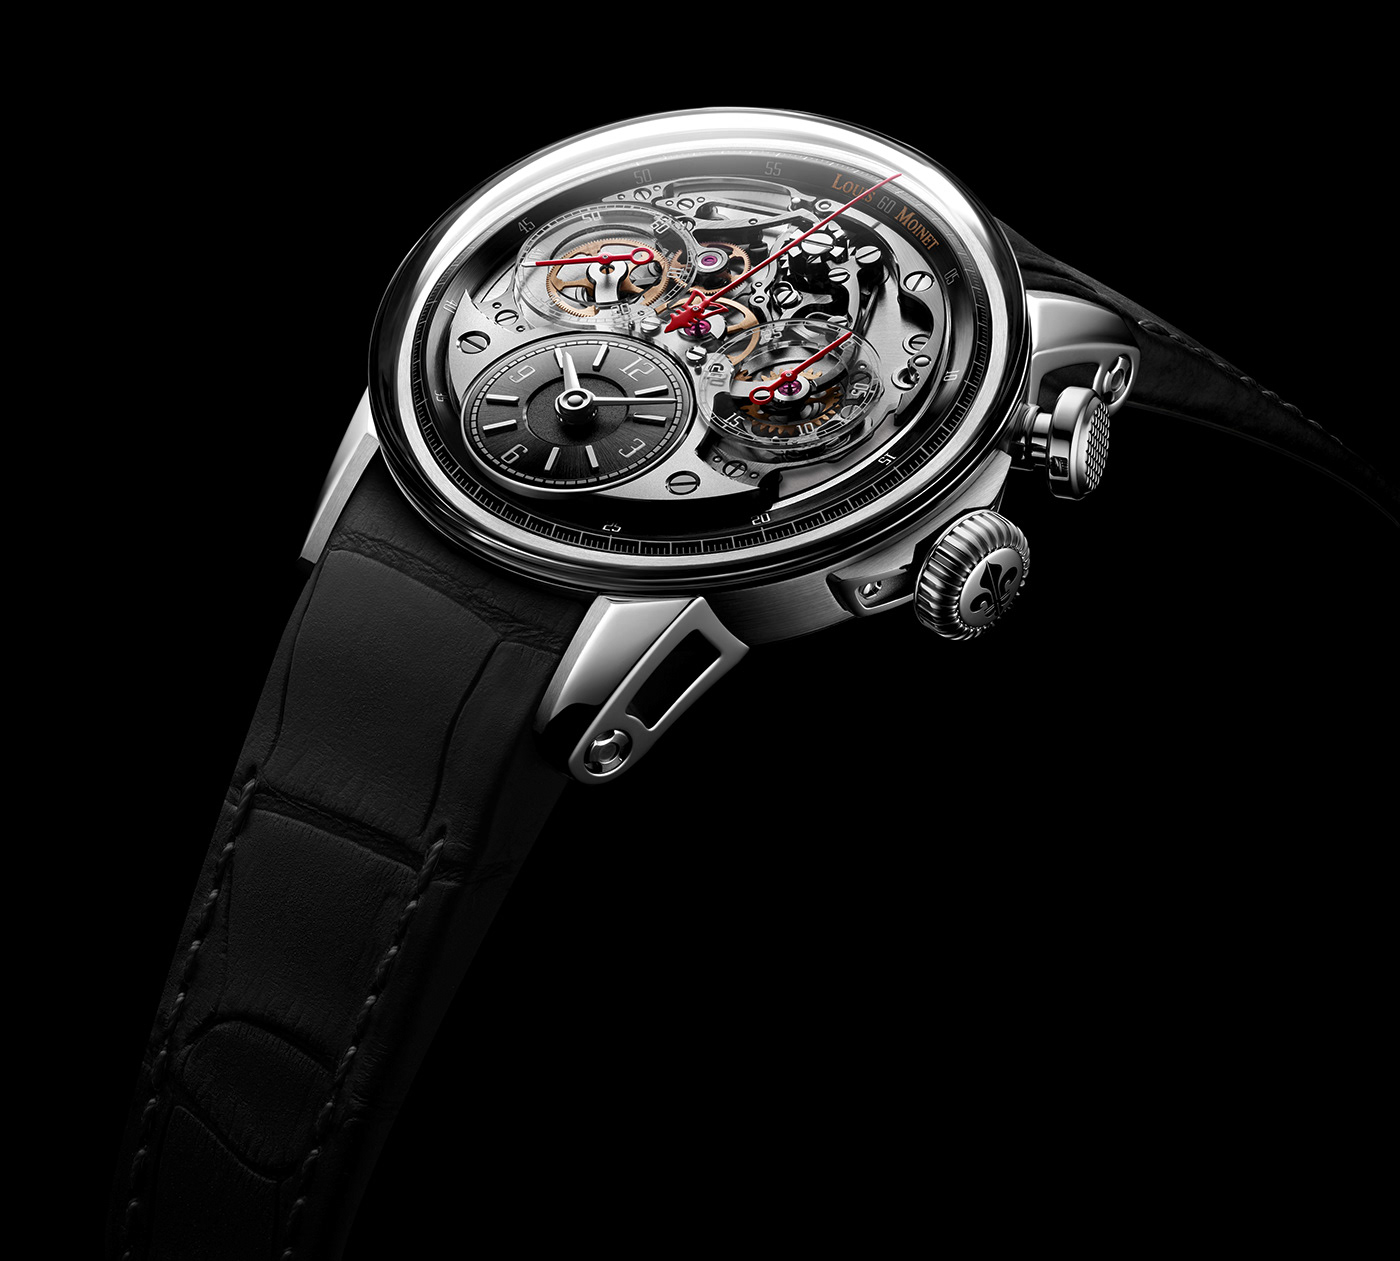 horology luxury timepiece watch watch design Watches